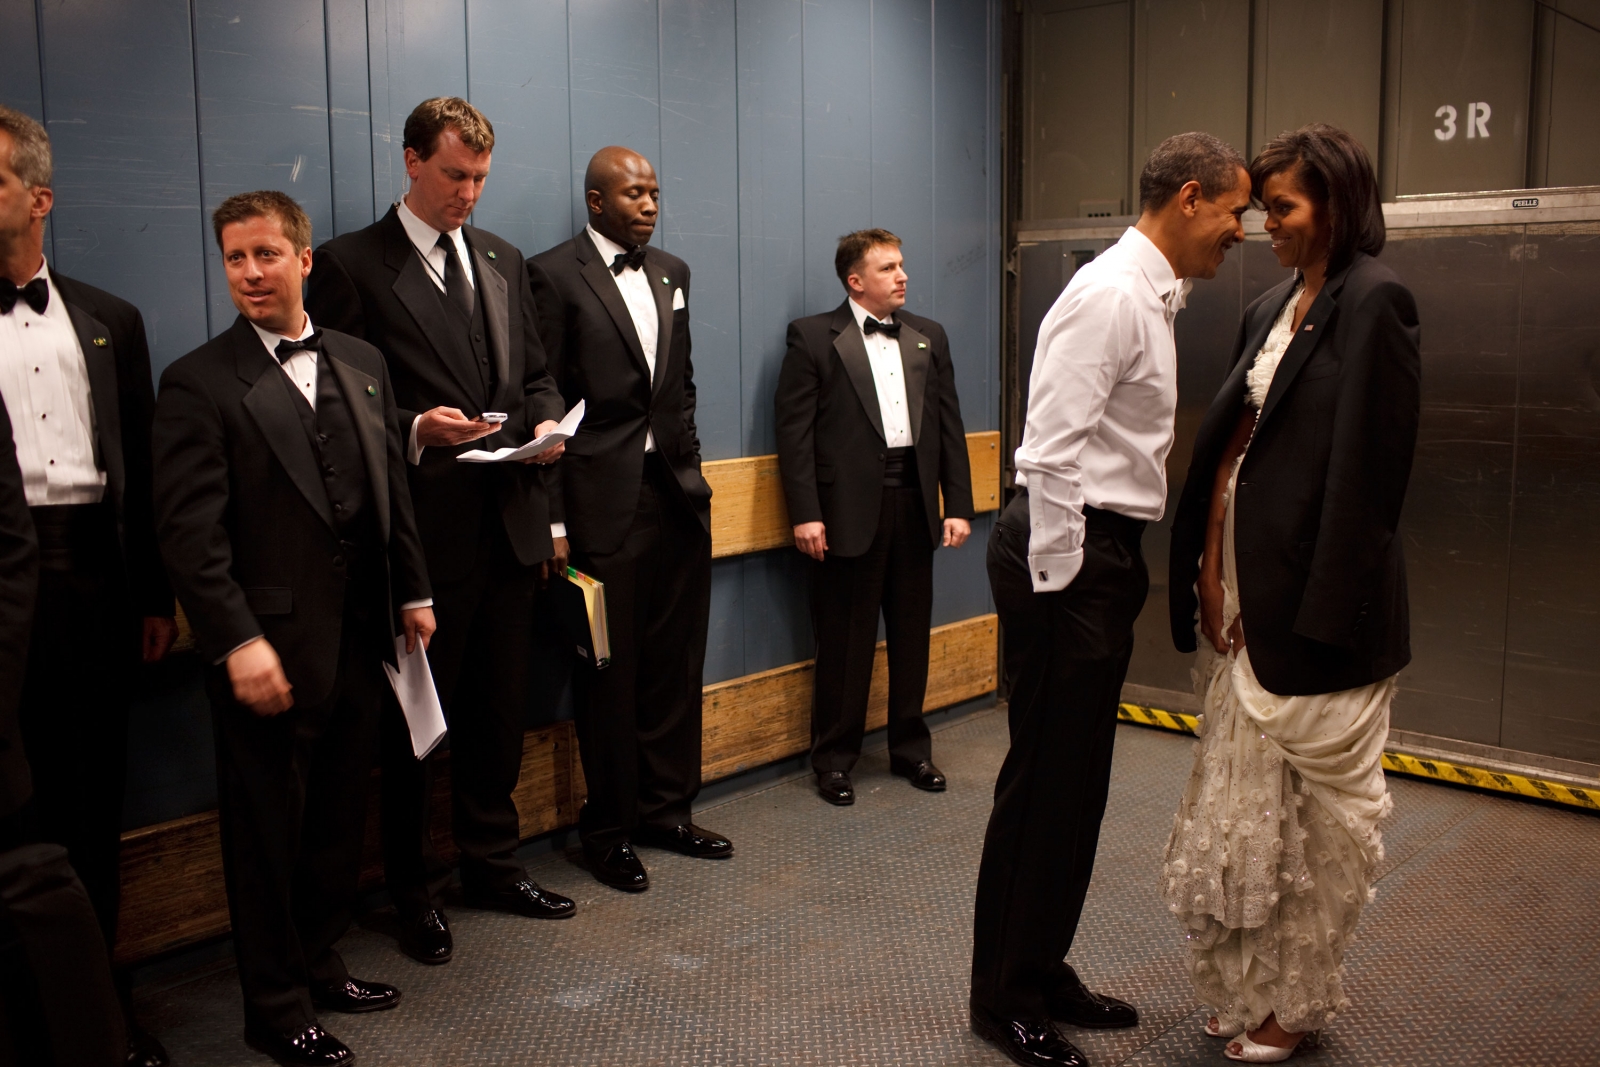 โอบามา หยอกล้อกับ มิเชล โอบามา สุภาพสตรีหมายเลข 1 ในงานเลี้ยงเฉลิมฉลองการเข้ารับตำแหน่ง / Official White House Photo by Pete Souza